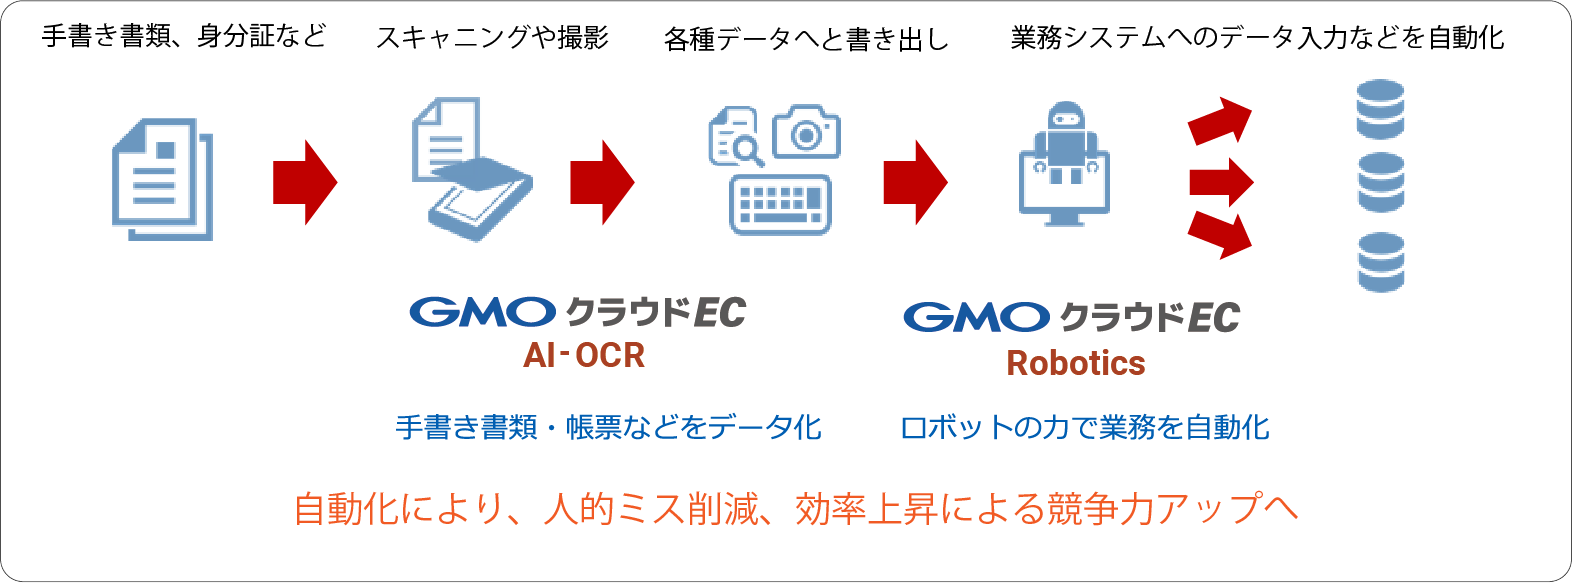 GMOクラウドEC AI-OCRと連携